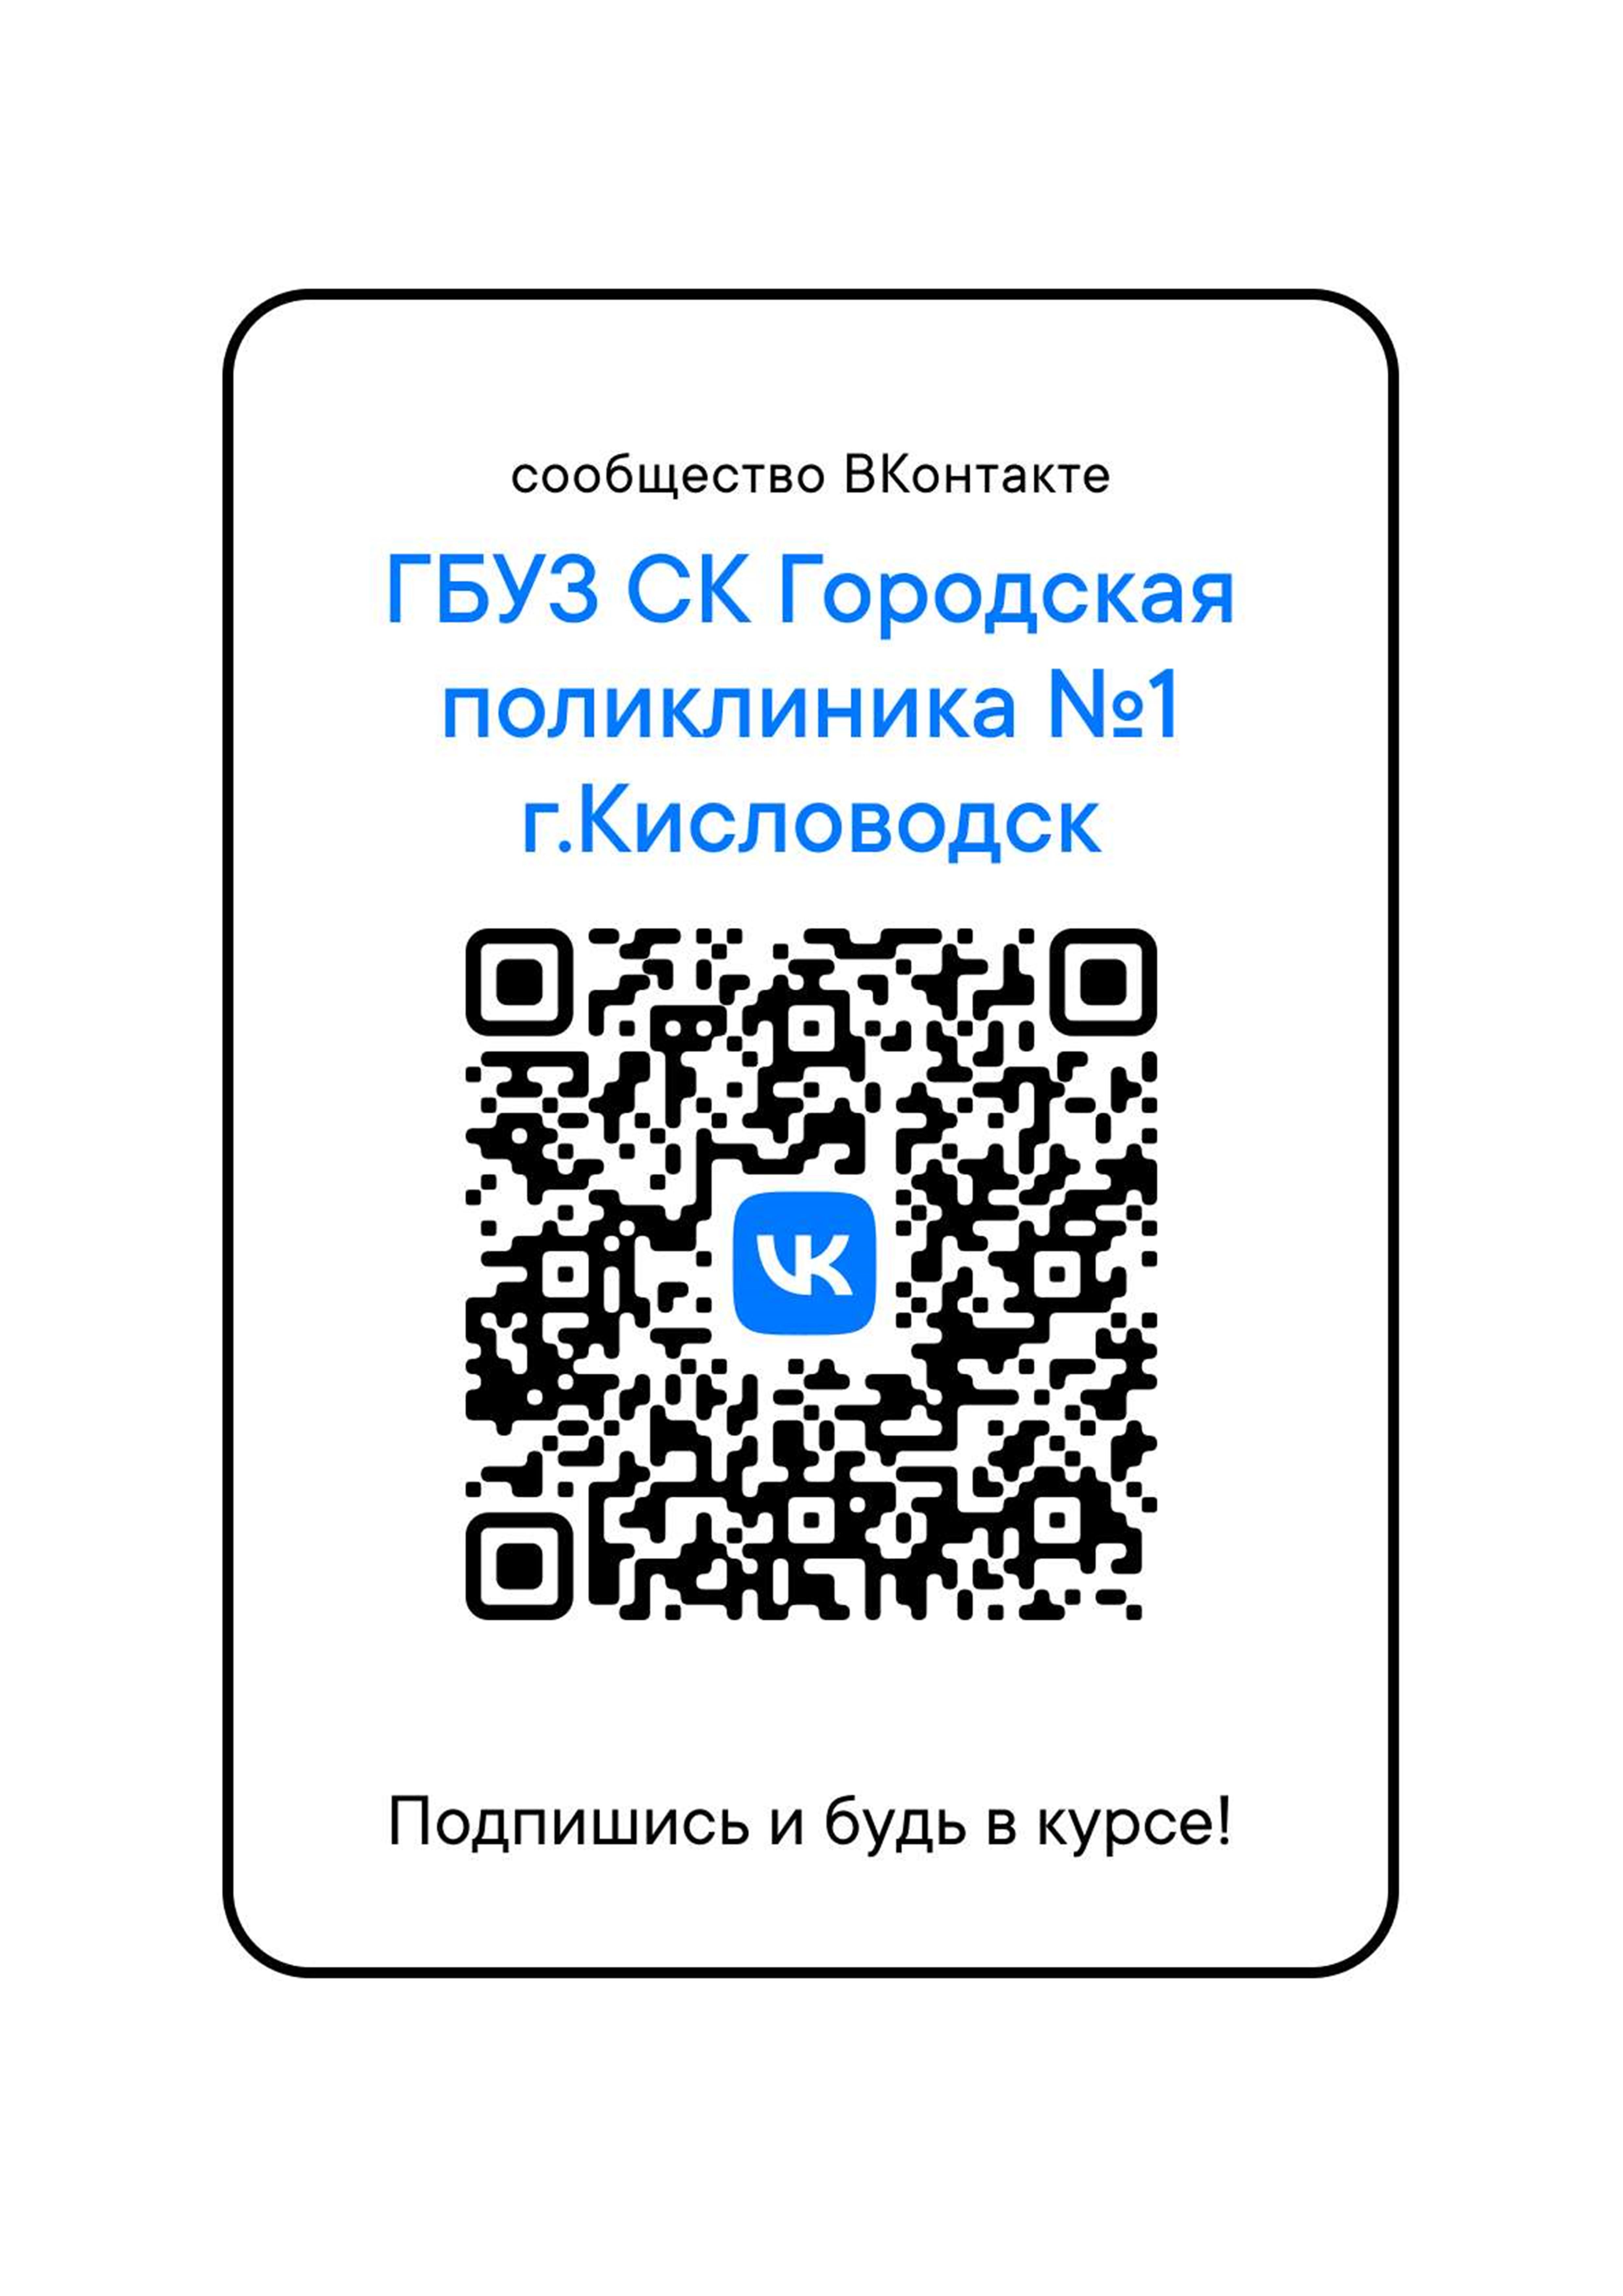 QR-код ВКонтакте